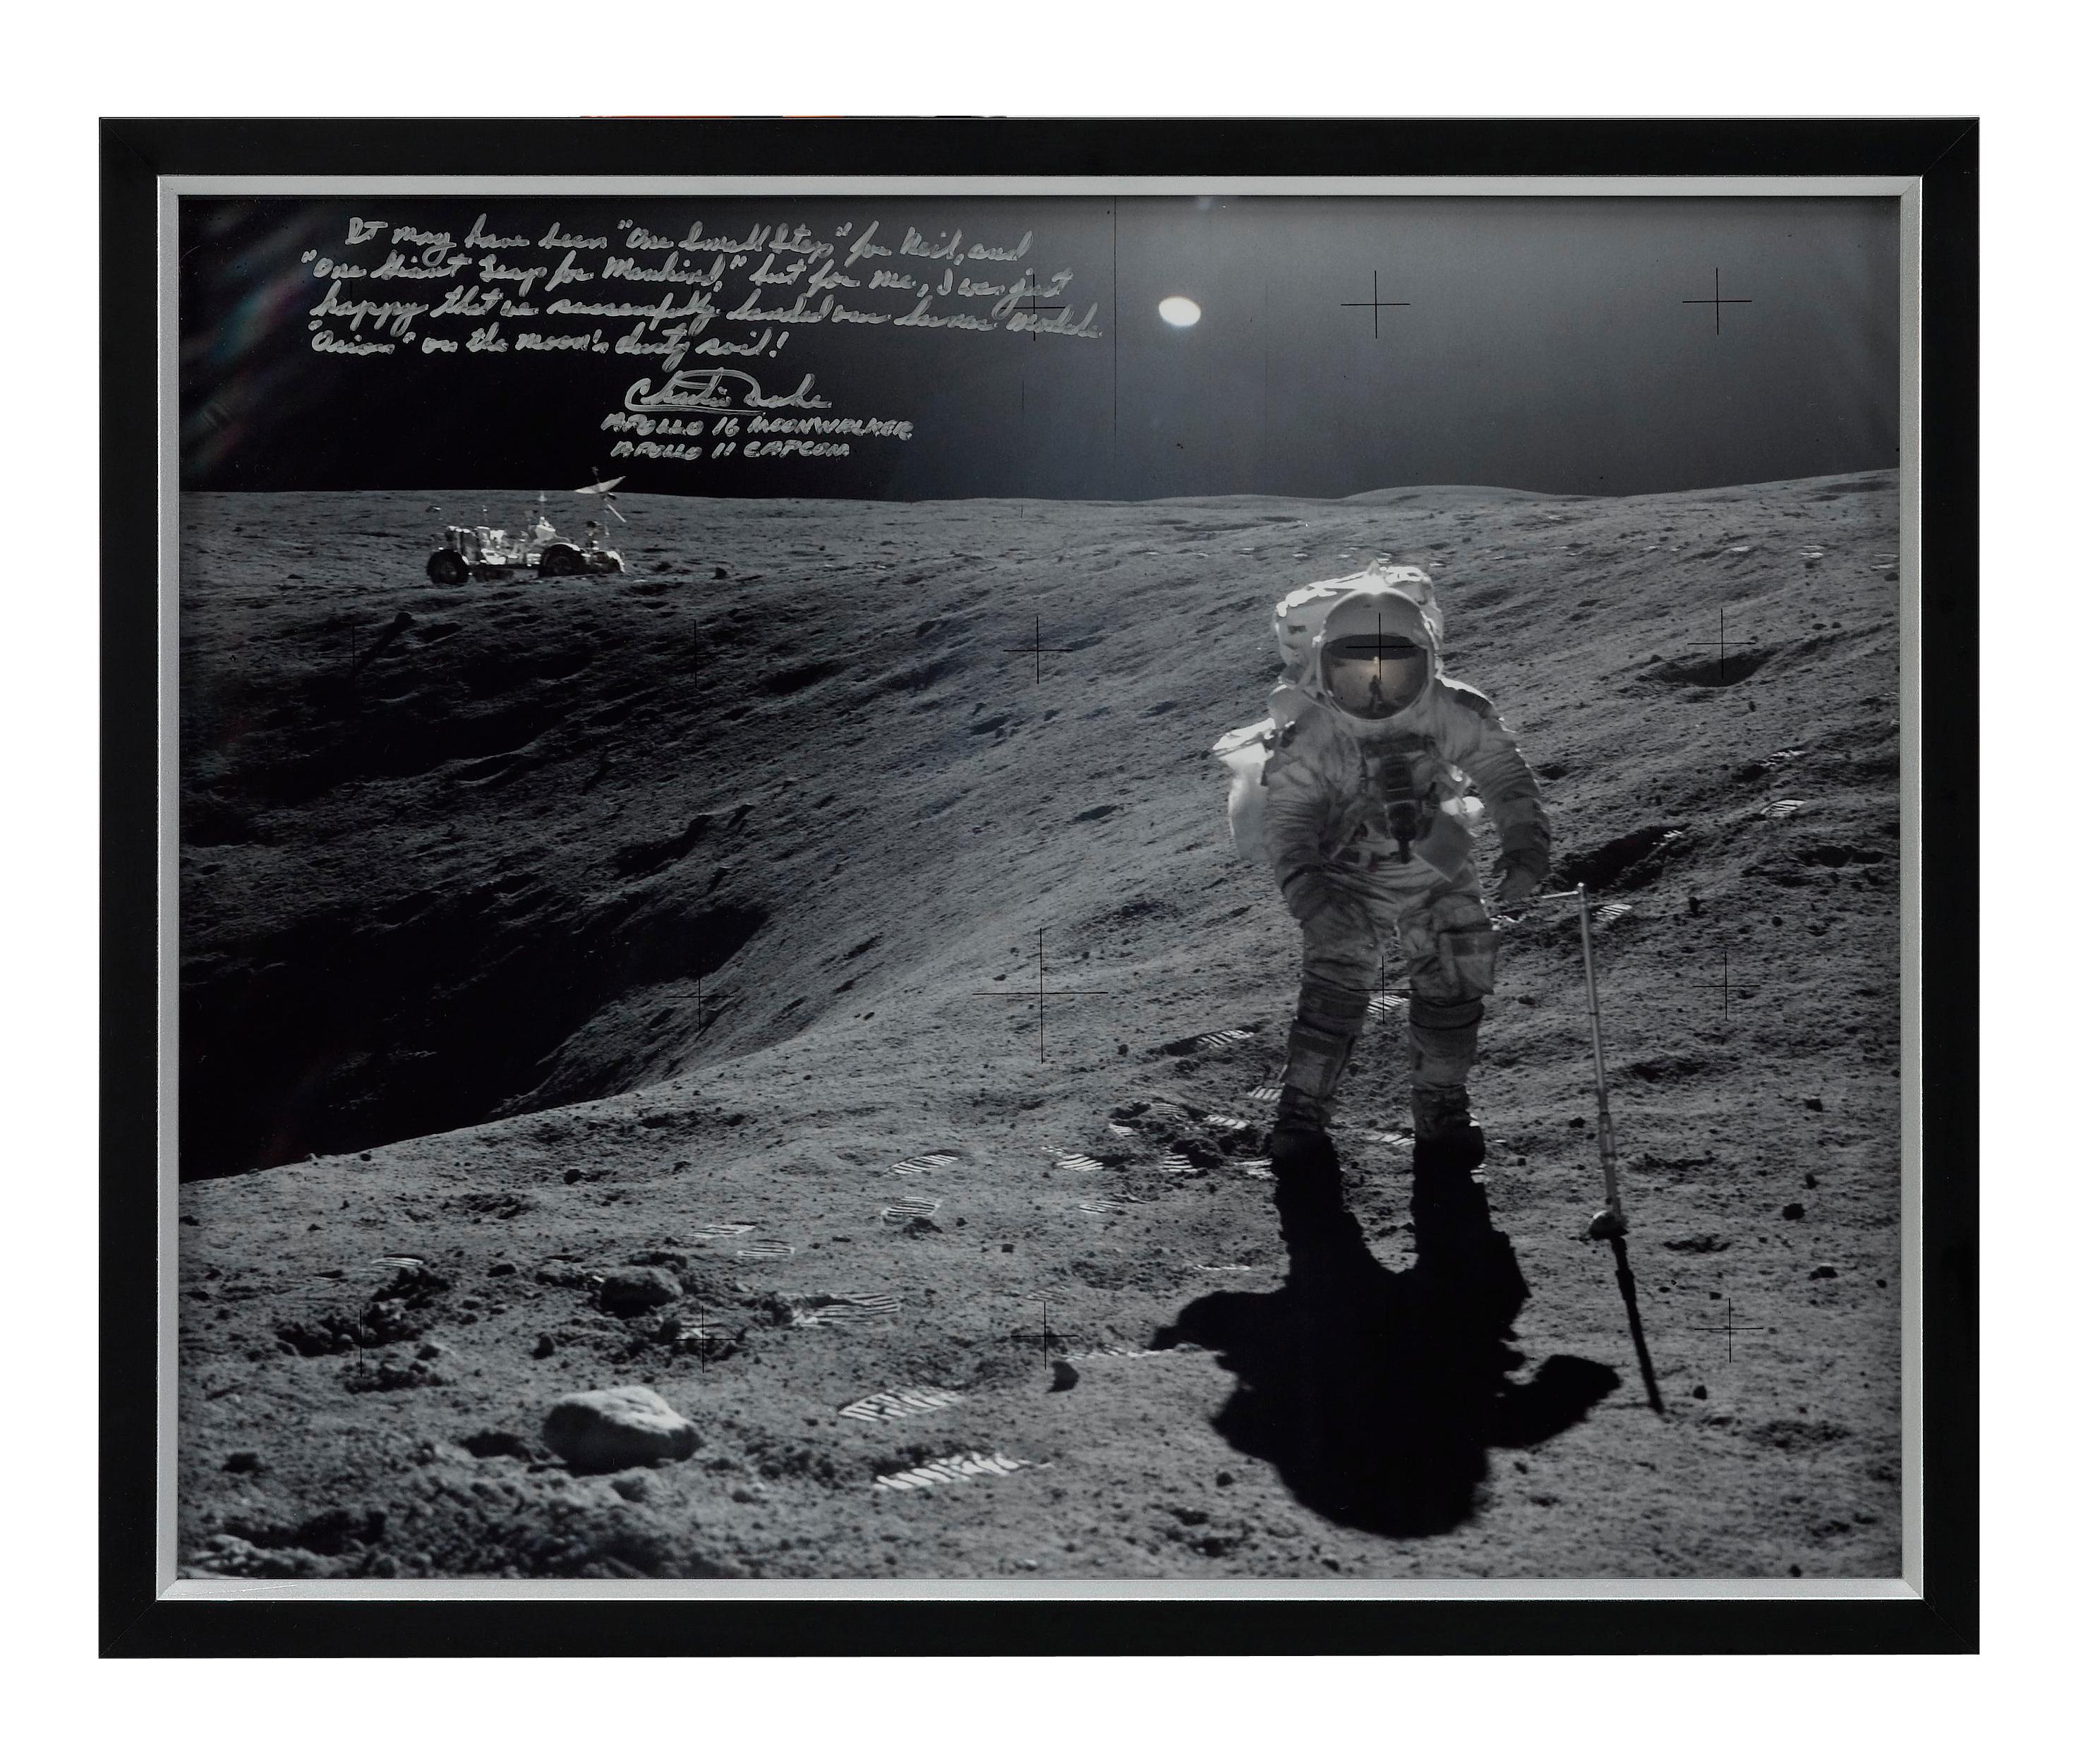 Nous présentons une photographie de la mission Apollo 16, signée et inscrite par le moonwalker d'Apollo 16, Charlie Duke. La photo montre Duke collectant des échantillons lunaires à côté du cratère Plum sur la Lune. La photographie porte une